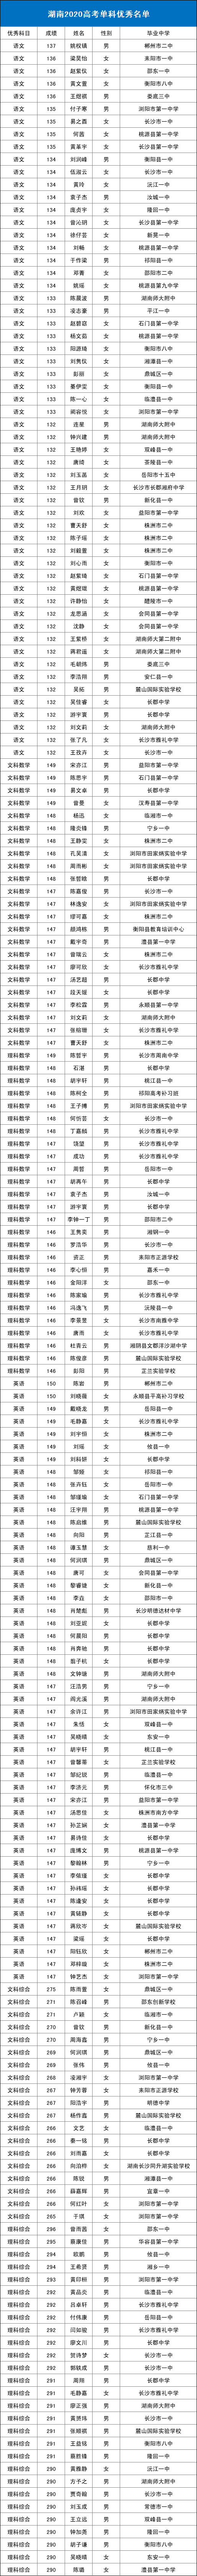 2020湖南省高考排名_学霸丨湖南2020高考单科优秀名单,可增加一次投档机